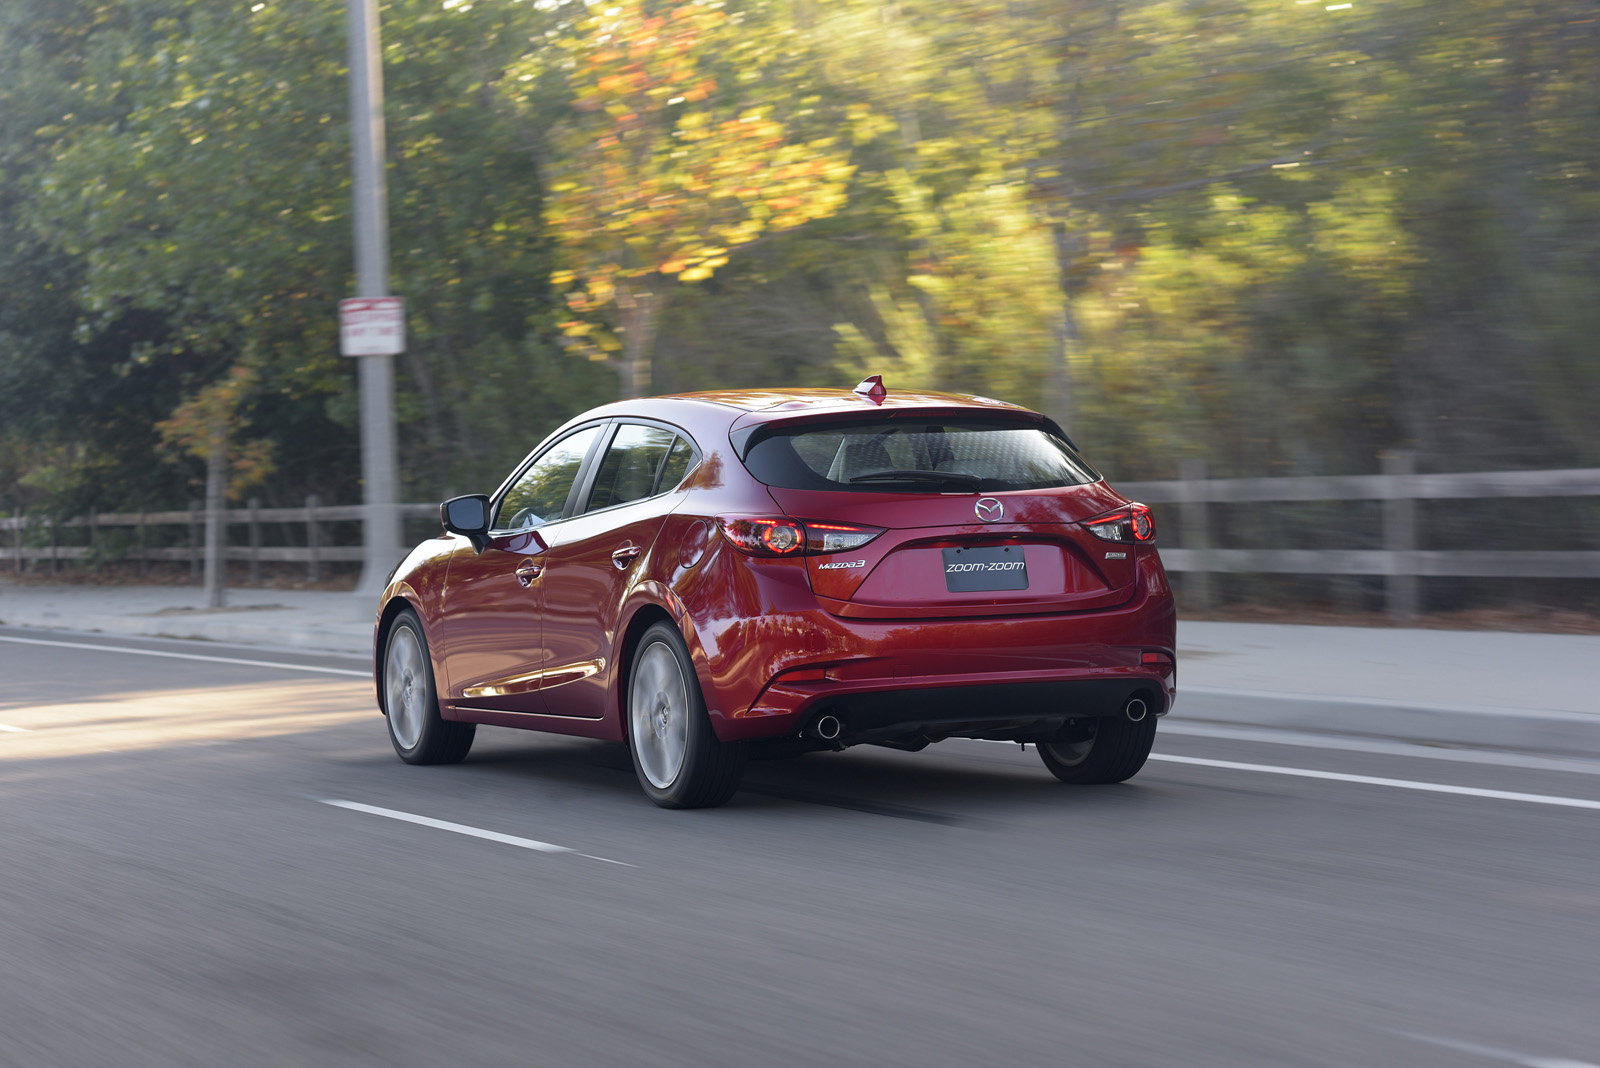 2017 Mazda3 Gets Subtle Updates Including G-Vectoring Control [44 Pics